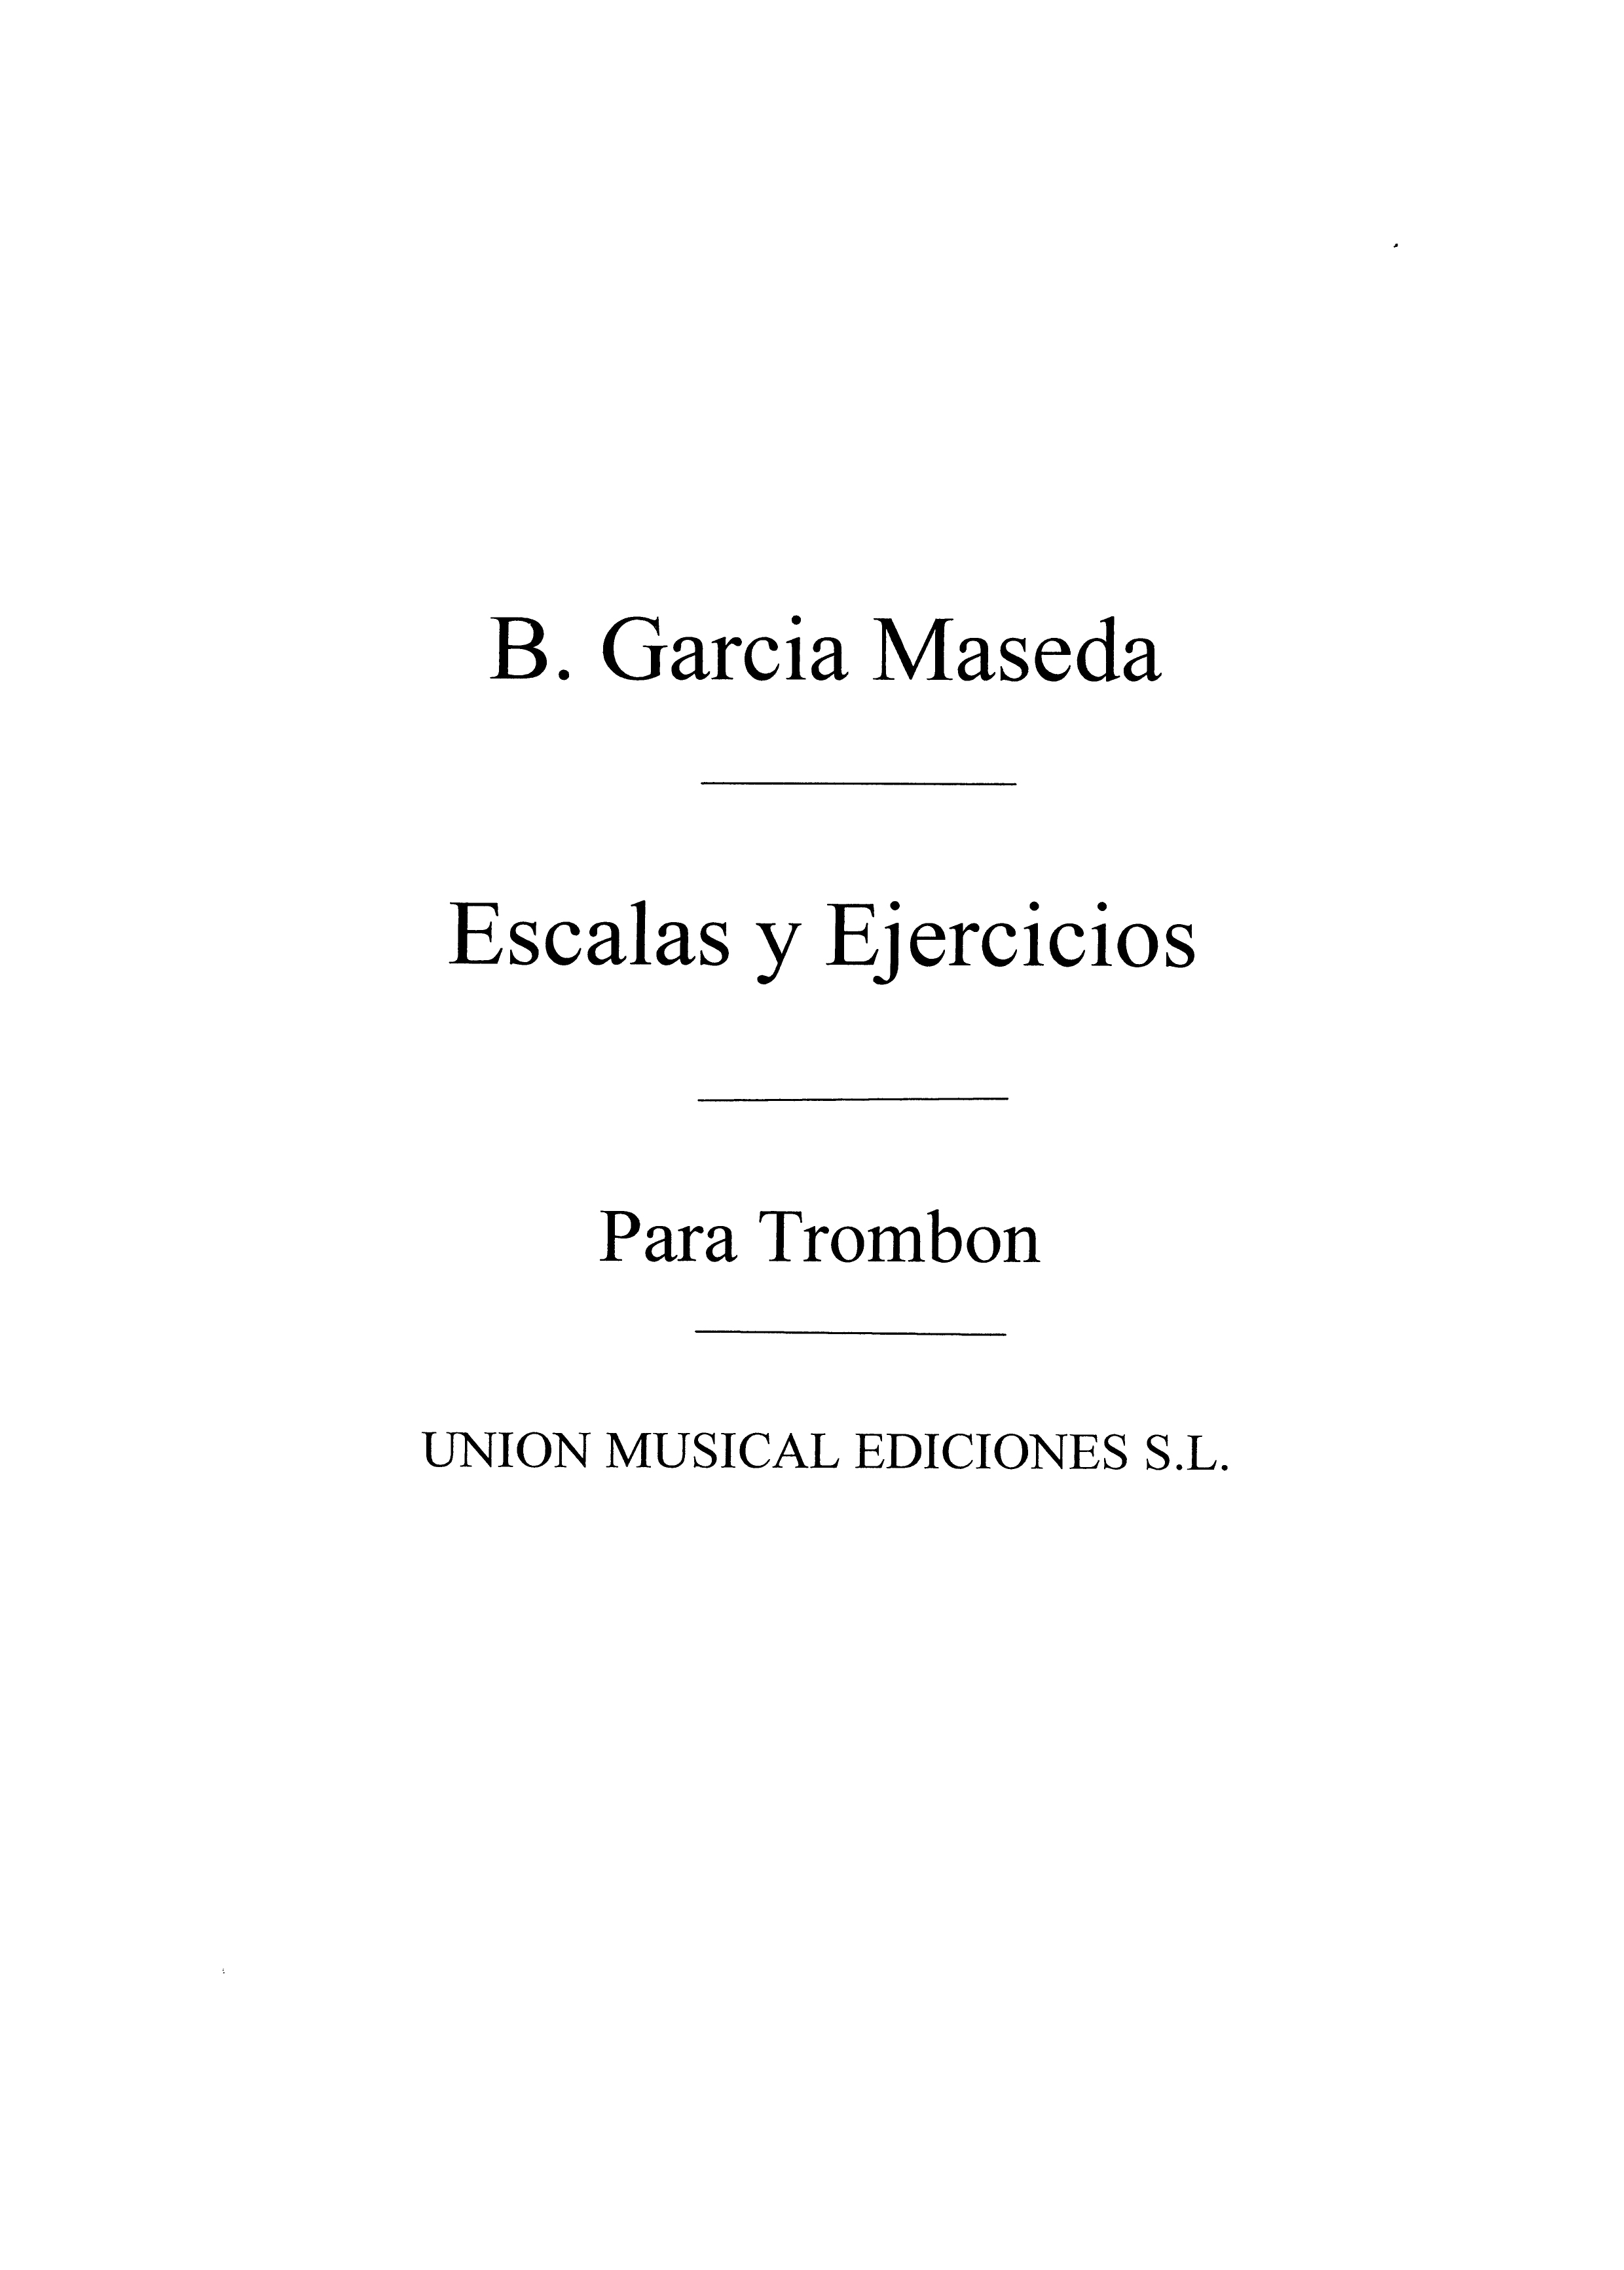 Bernardo Garcia Maseda: Escalas Y Ejercicios For Trombone: Trombone: